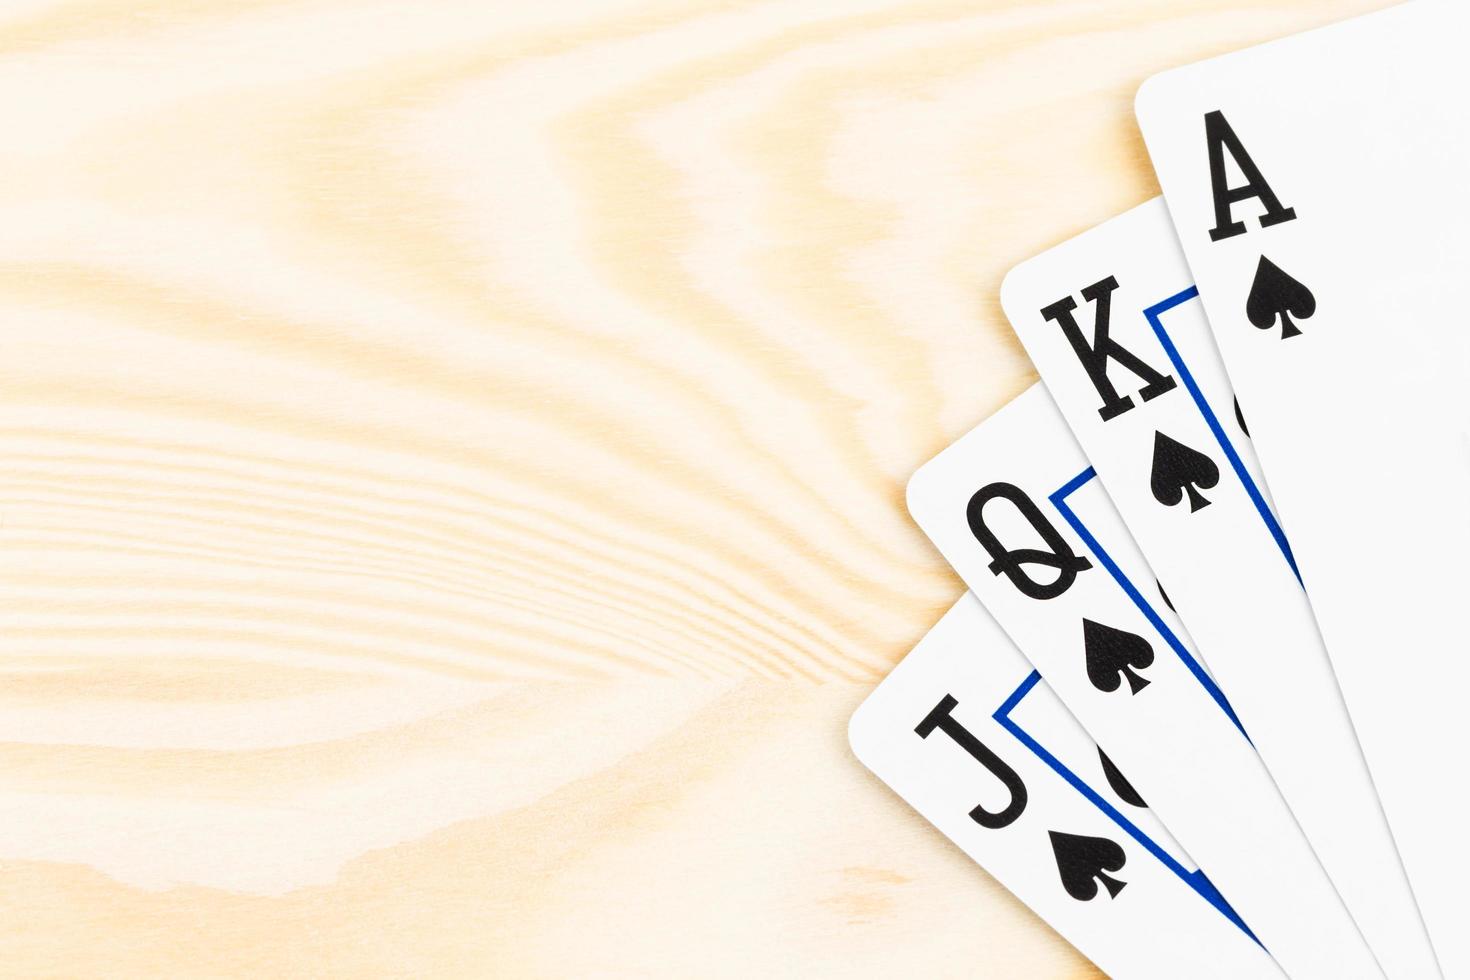 cartas de jogar pôquer royal flush em fundo de madeira foto